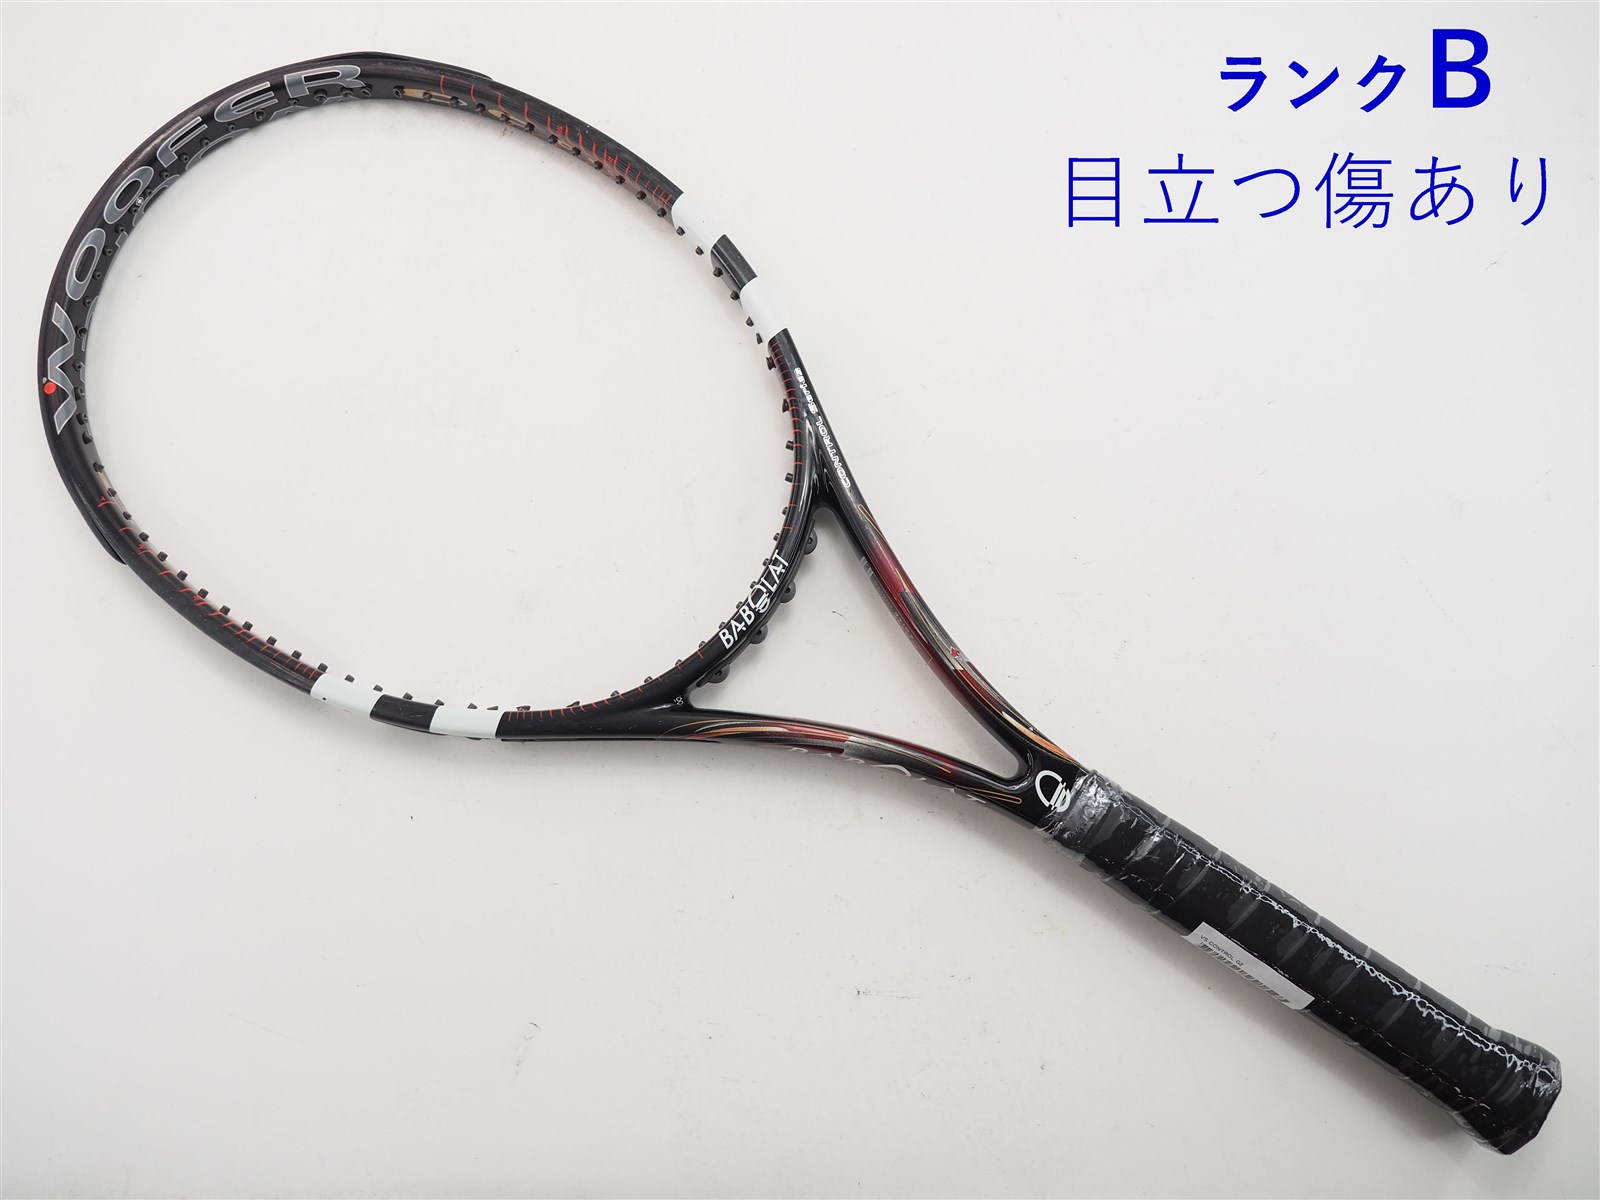 270インチフレーム厚テニスラケット バボラ ブイエス コントロール【トップバンパー割れ有り】 (G2)BABOLAT VS CONTROL